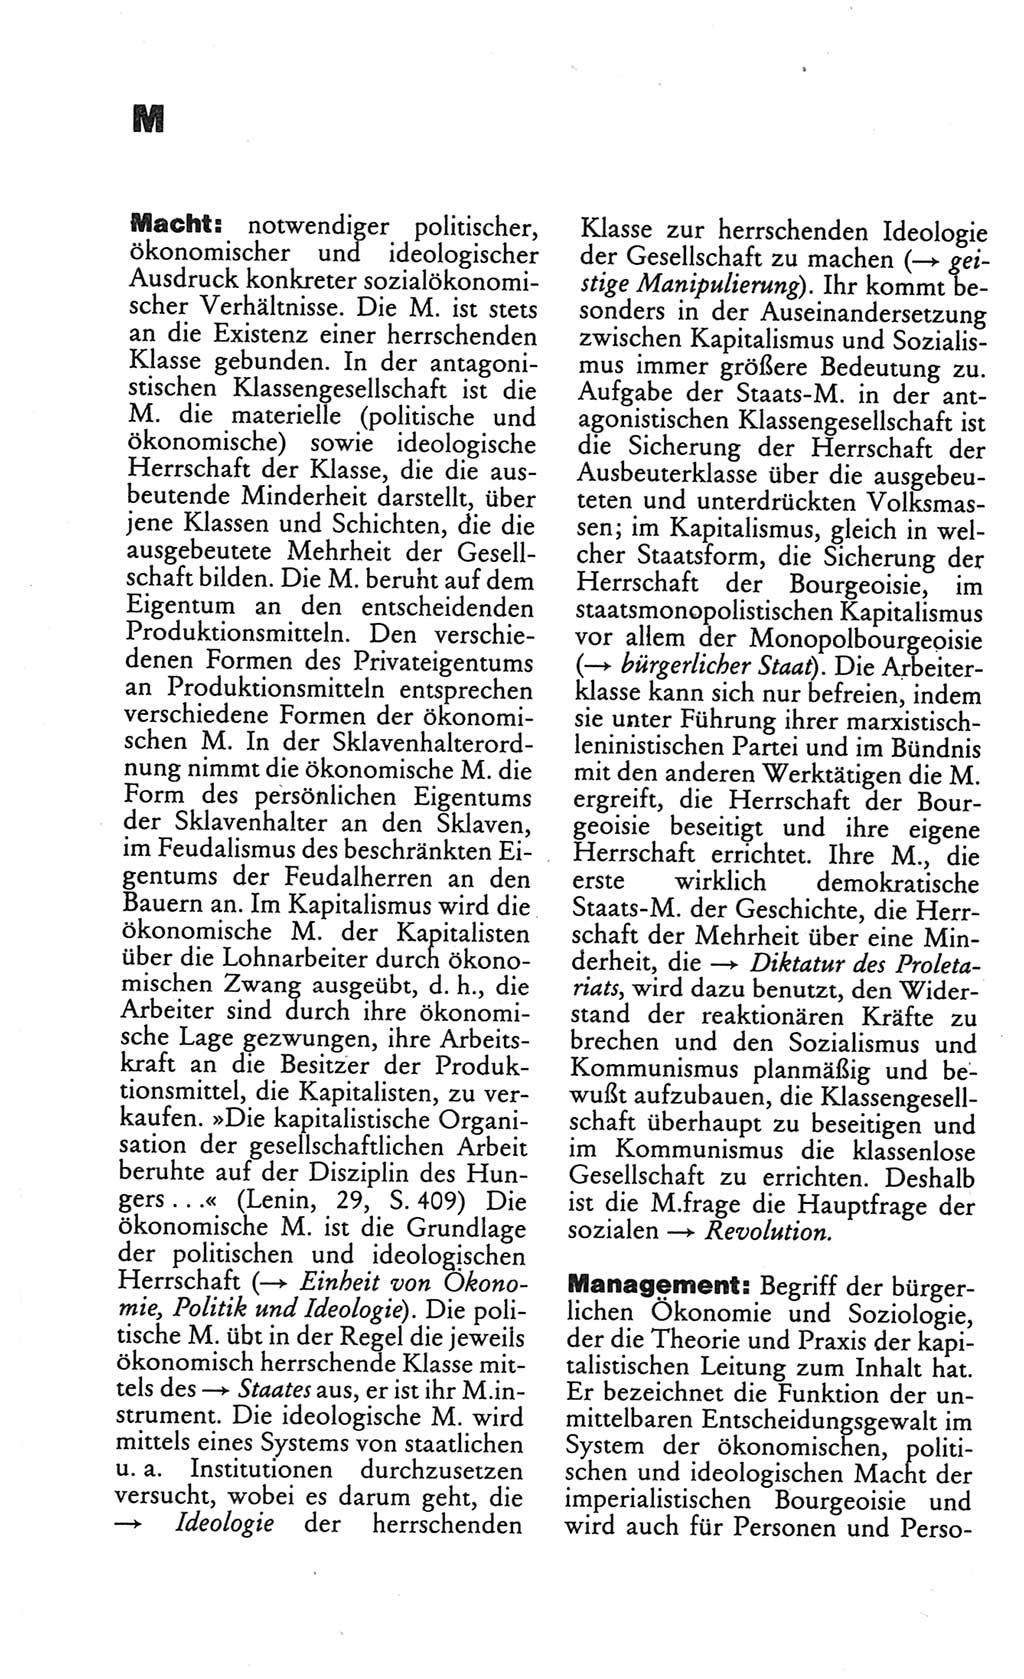 Kleines politisches Wörterbuch [Deutsche Demokratische Republik (DDR)] 1986, Seite 576 (Kl. pol. Wb. DDR 1986, S. 576)